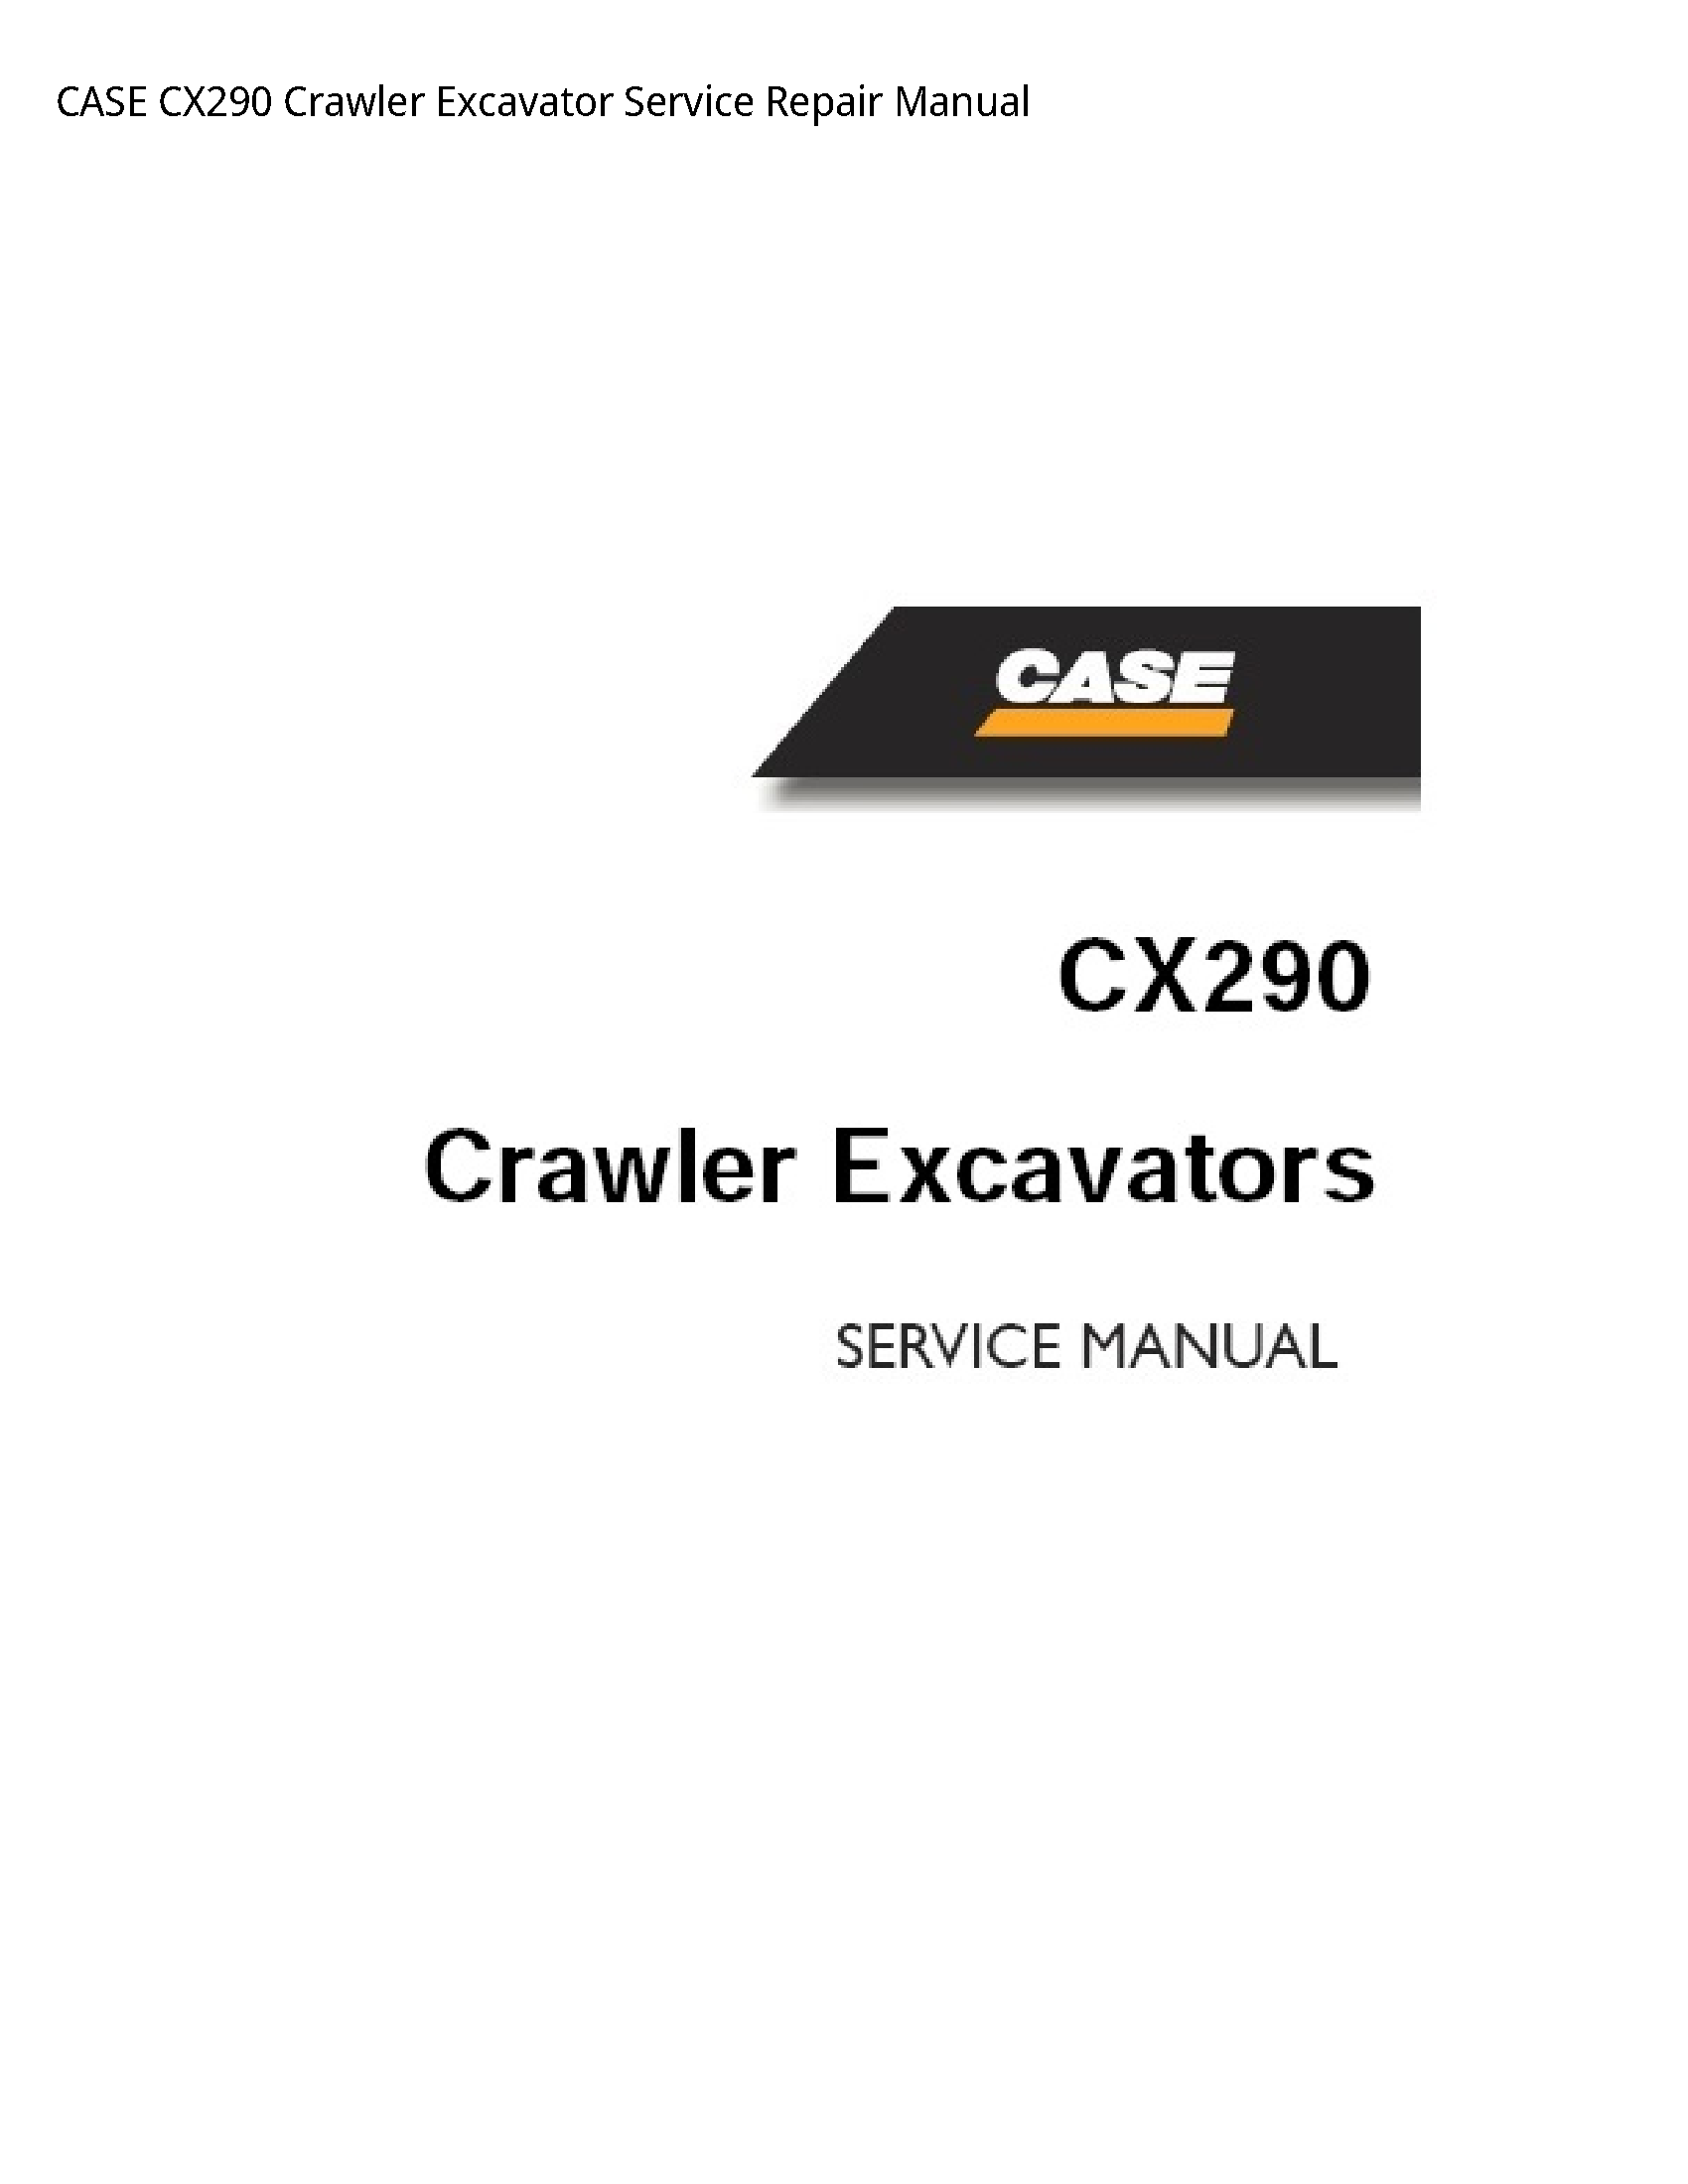 Case/Case IH CX290 Crawler Excavator manual